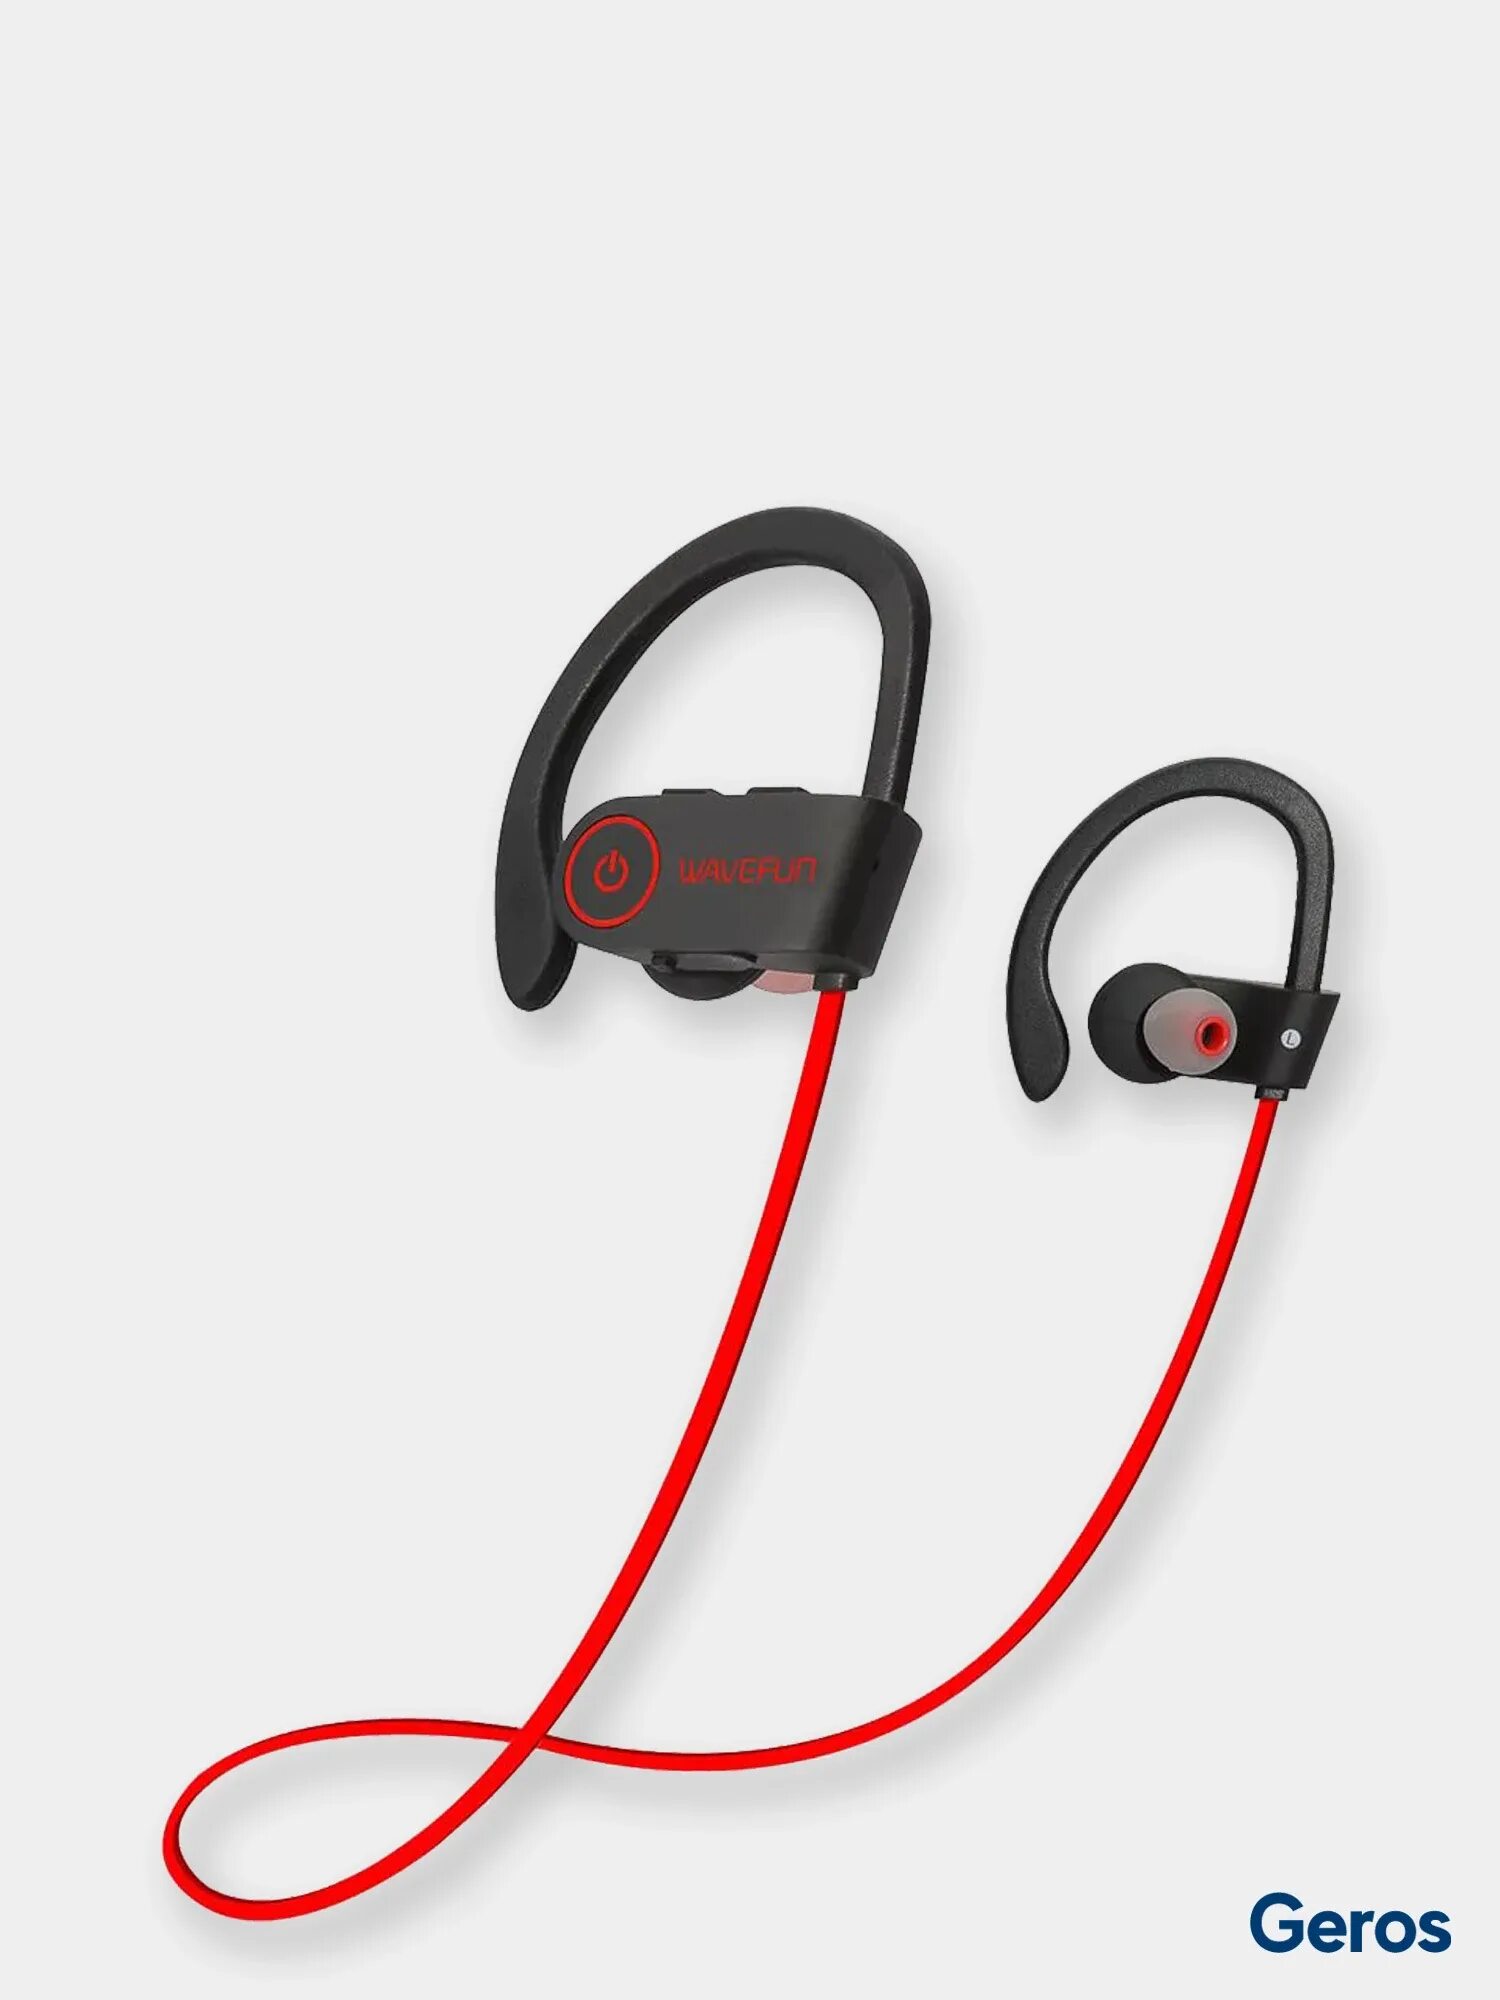 WAVEFUN X-Buds 2. Наушники Wireless Headphones беспроводные. Наушники Beats Sport беспроводные. Блютуз наушники с проводом. Лучшие беспроводные наушники для разговора по телефону